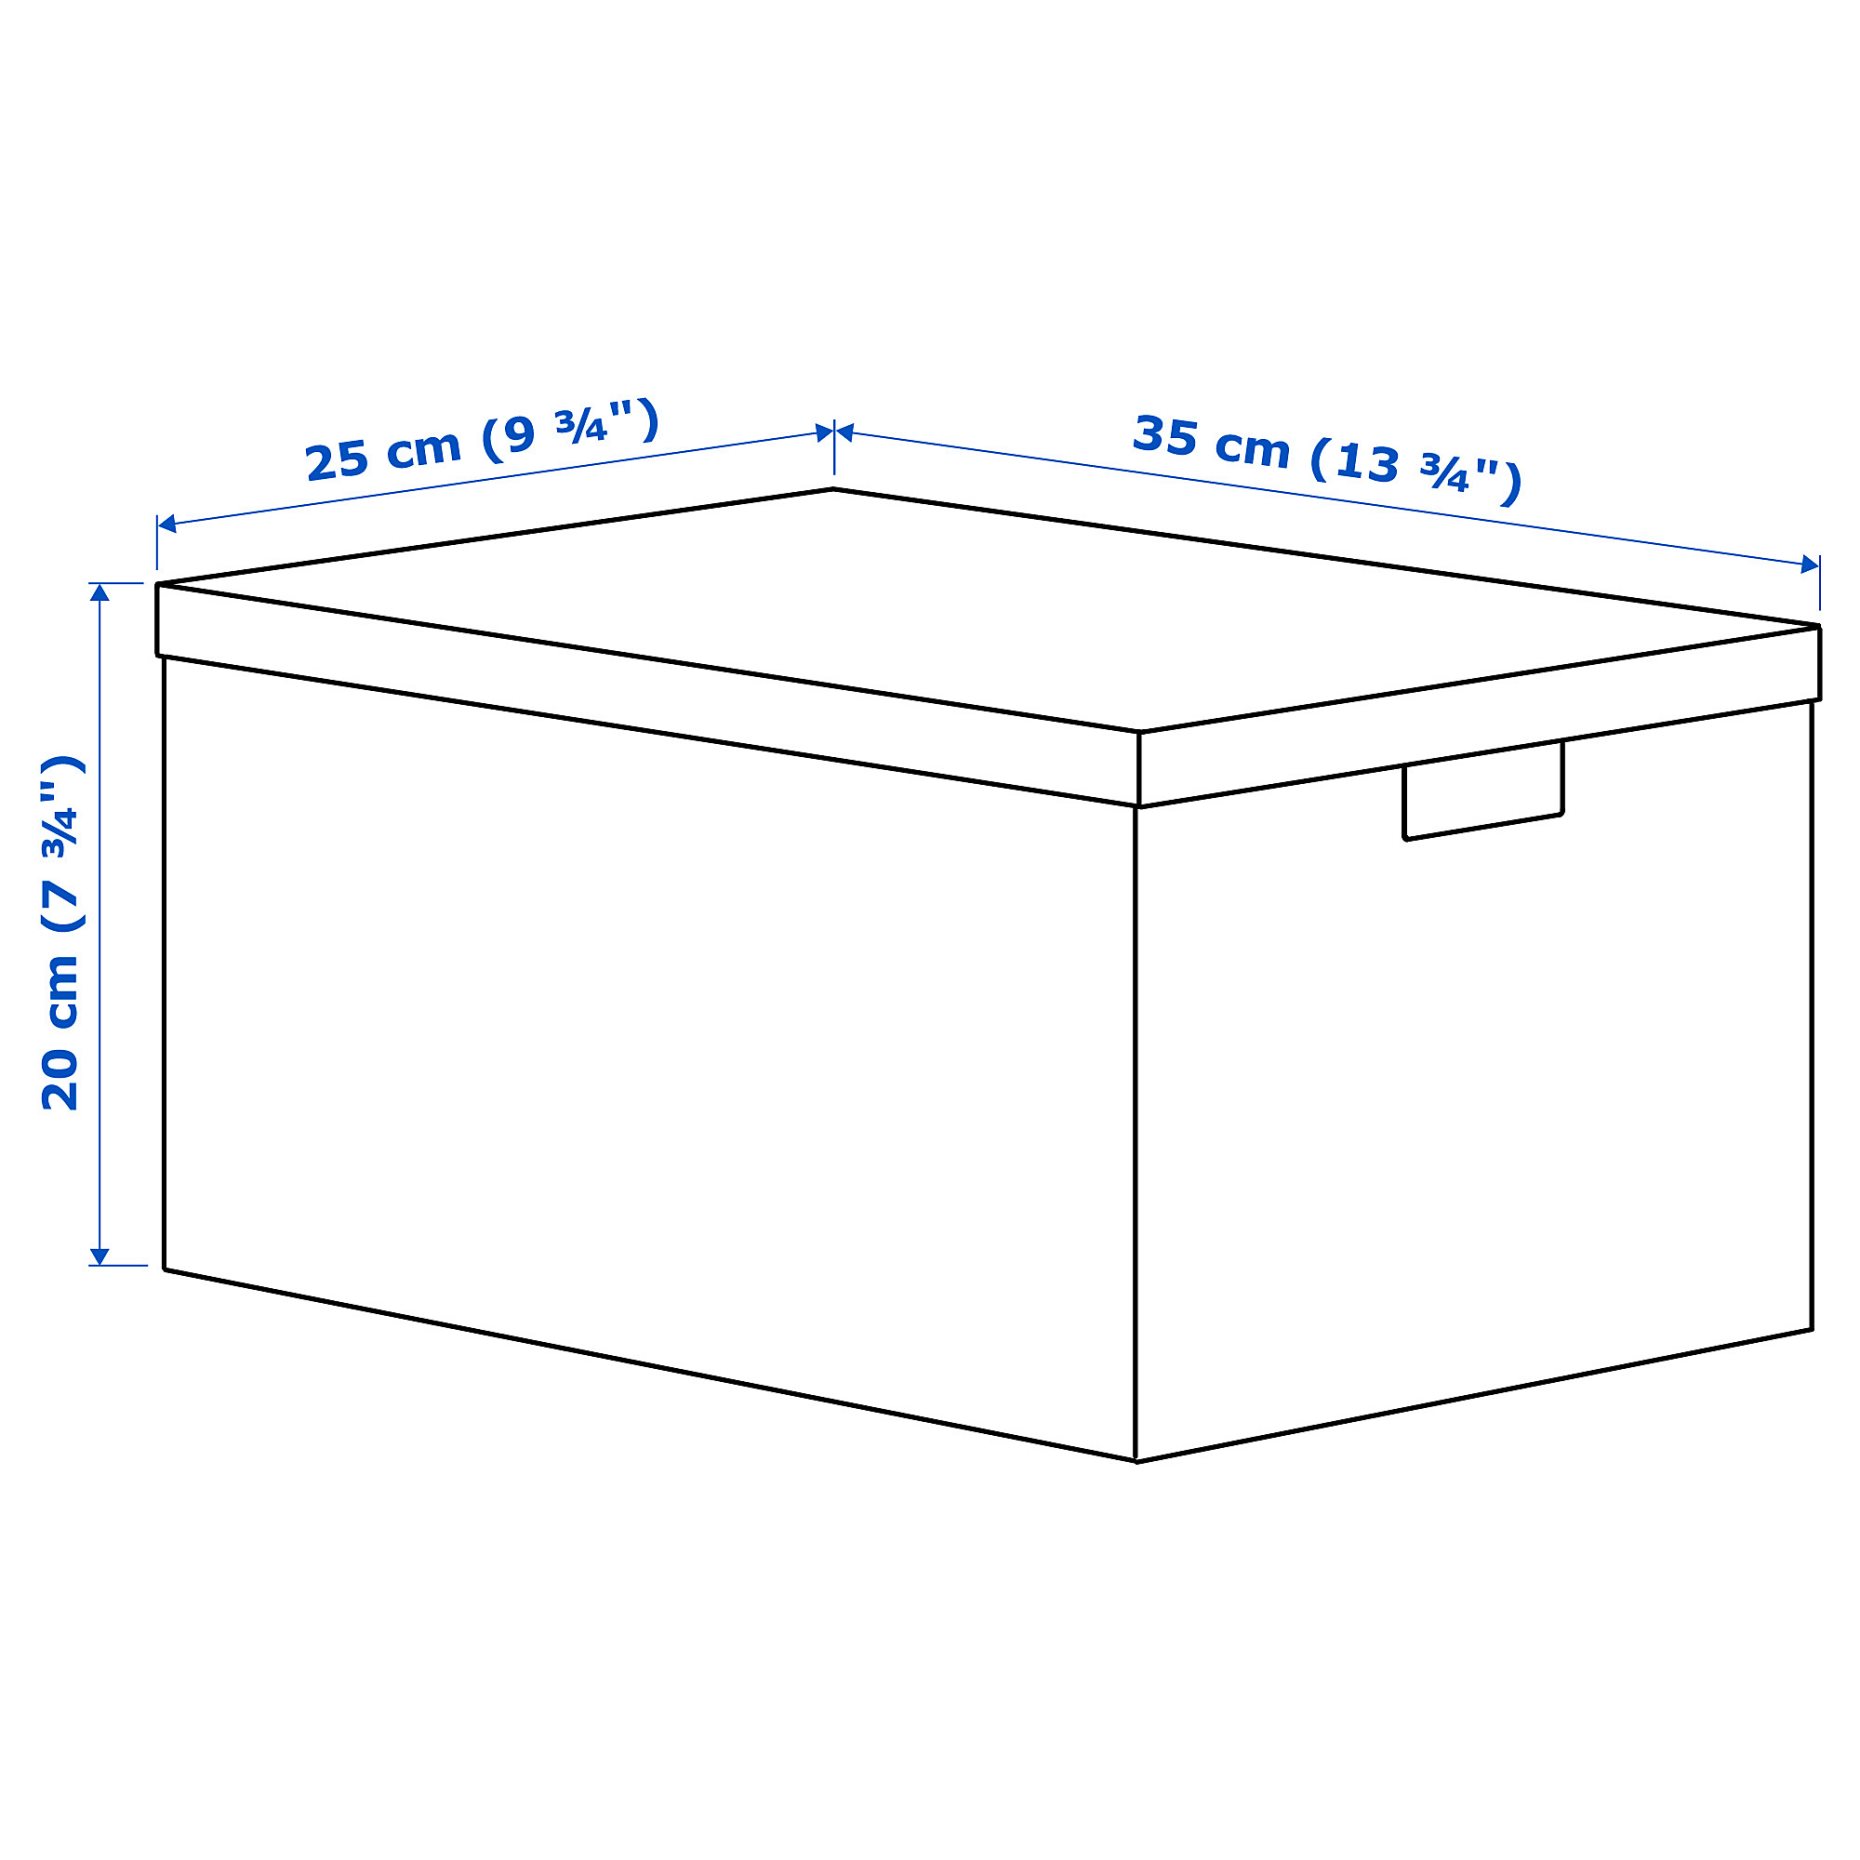 RAGODLING, storage box with lid, 25x35x20 cm, 405.658.03